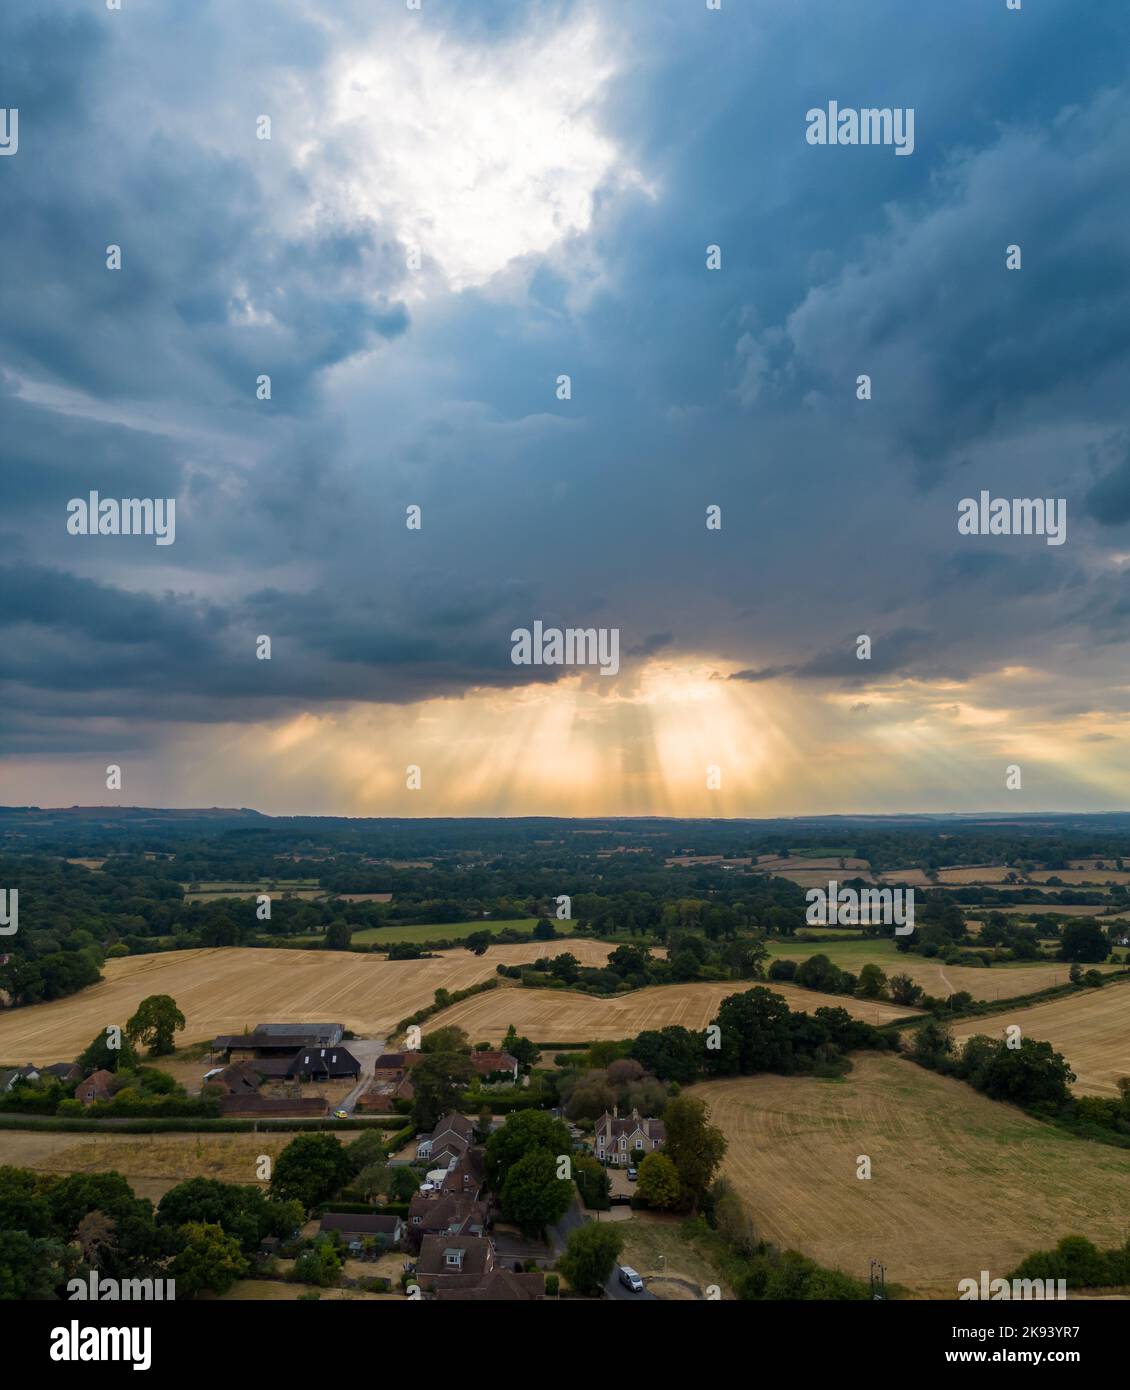 Impresionante imagen de paisaje aéreo de los rayos del sol que brillan a través de la brecha en las nubes en la campiña inglesa capturada por el zumbido en modo retrato Foto de stock